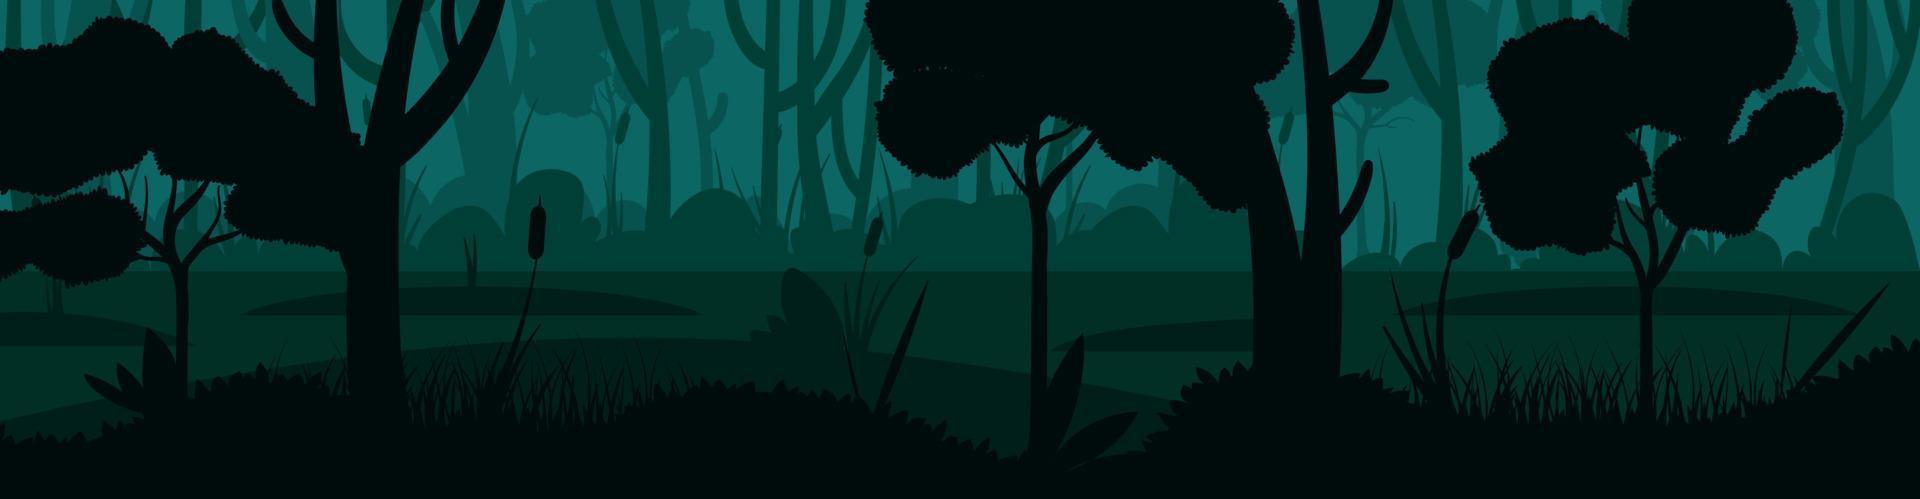 illustrazione di scena vettoriale di un bellissimo paesaggio notturno, alberi di silhouette verdi a strati, sfondo di paludi forestali in stile cartone animato di carta banner piatta